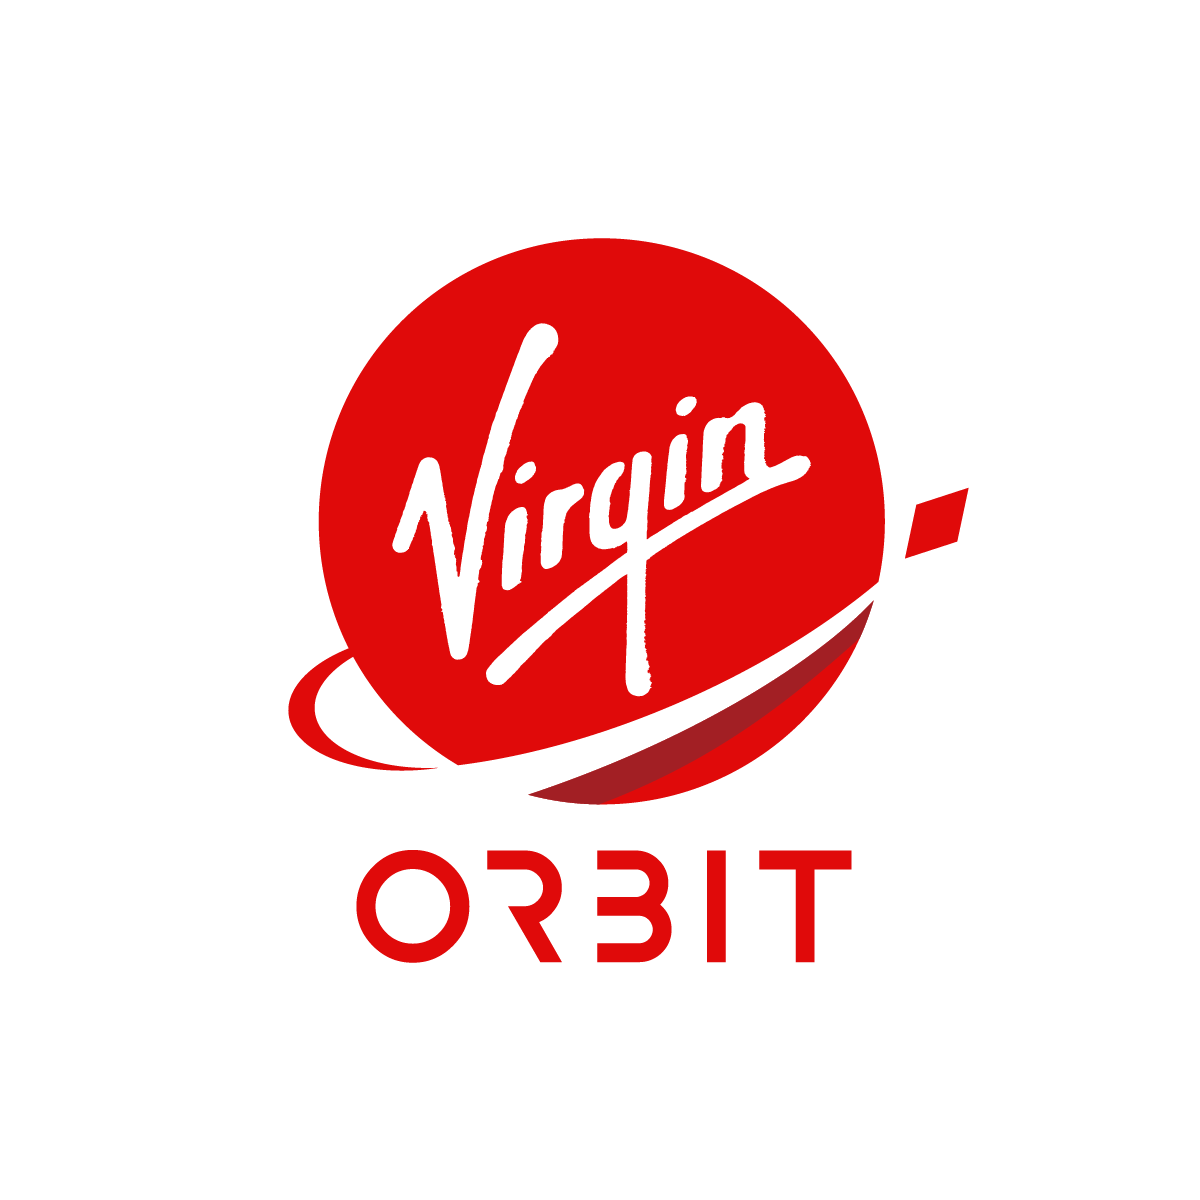 The Virgin Orbit logo